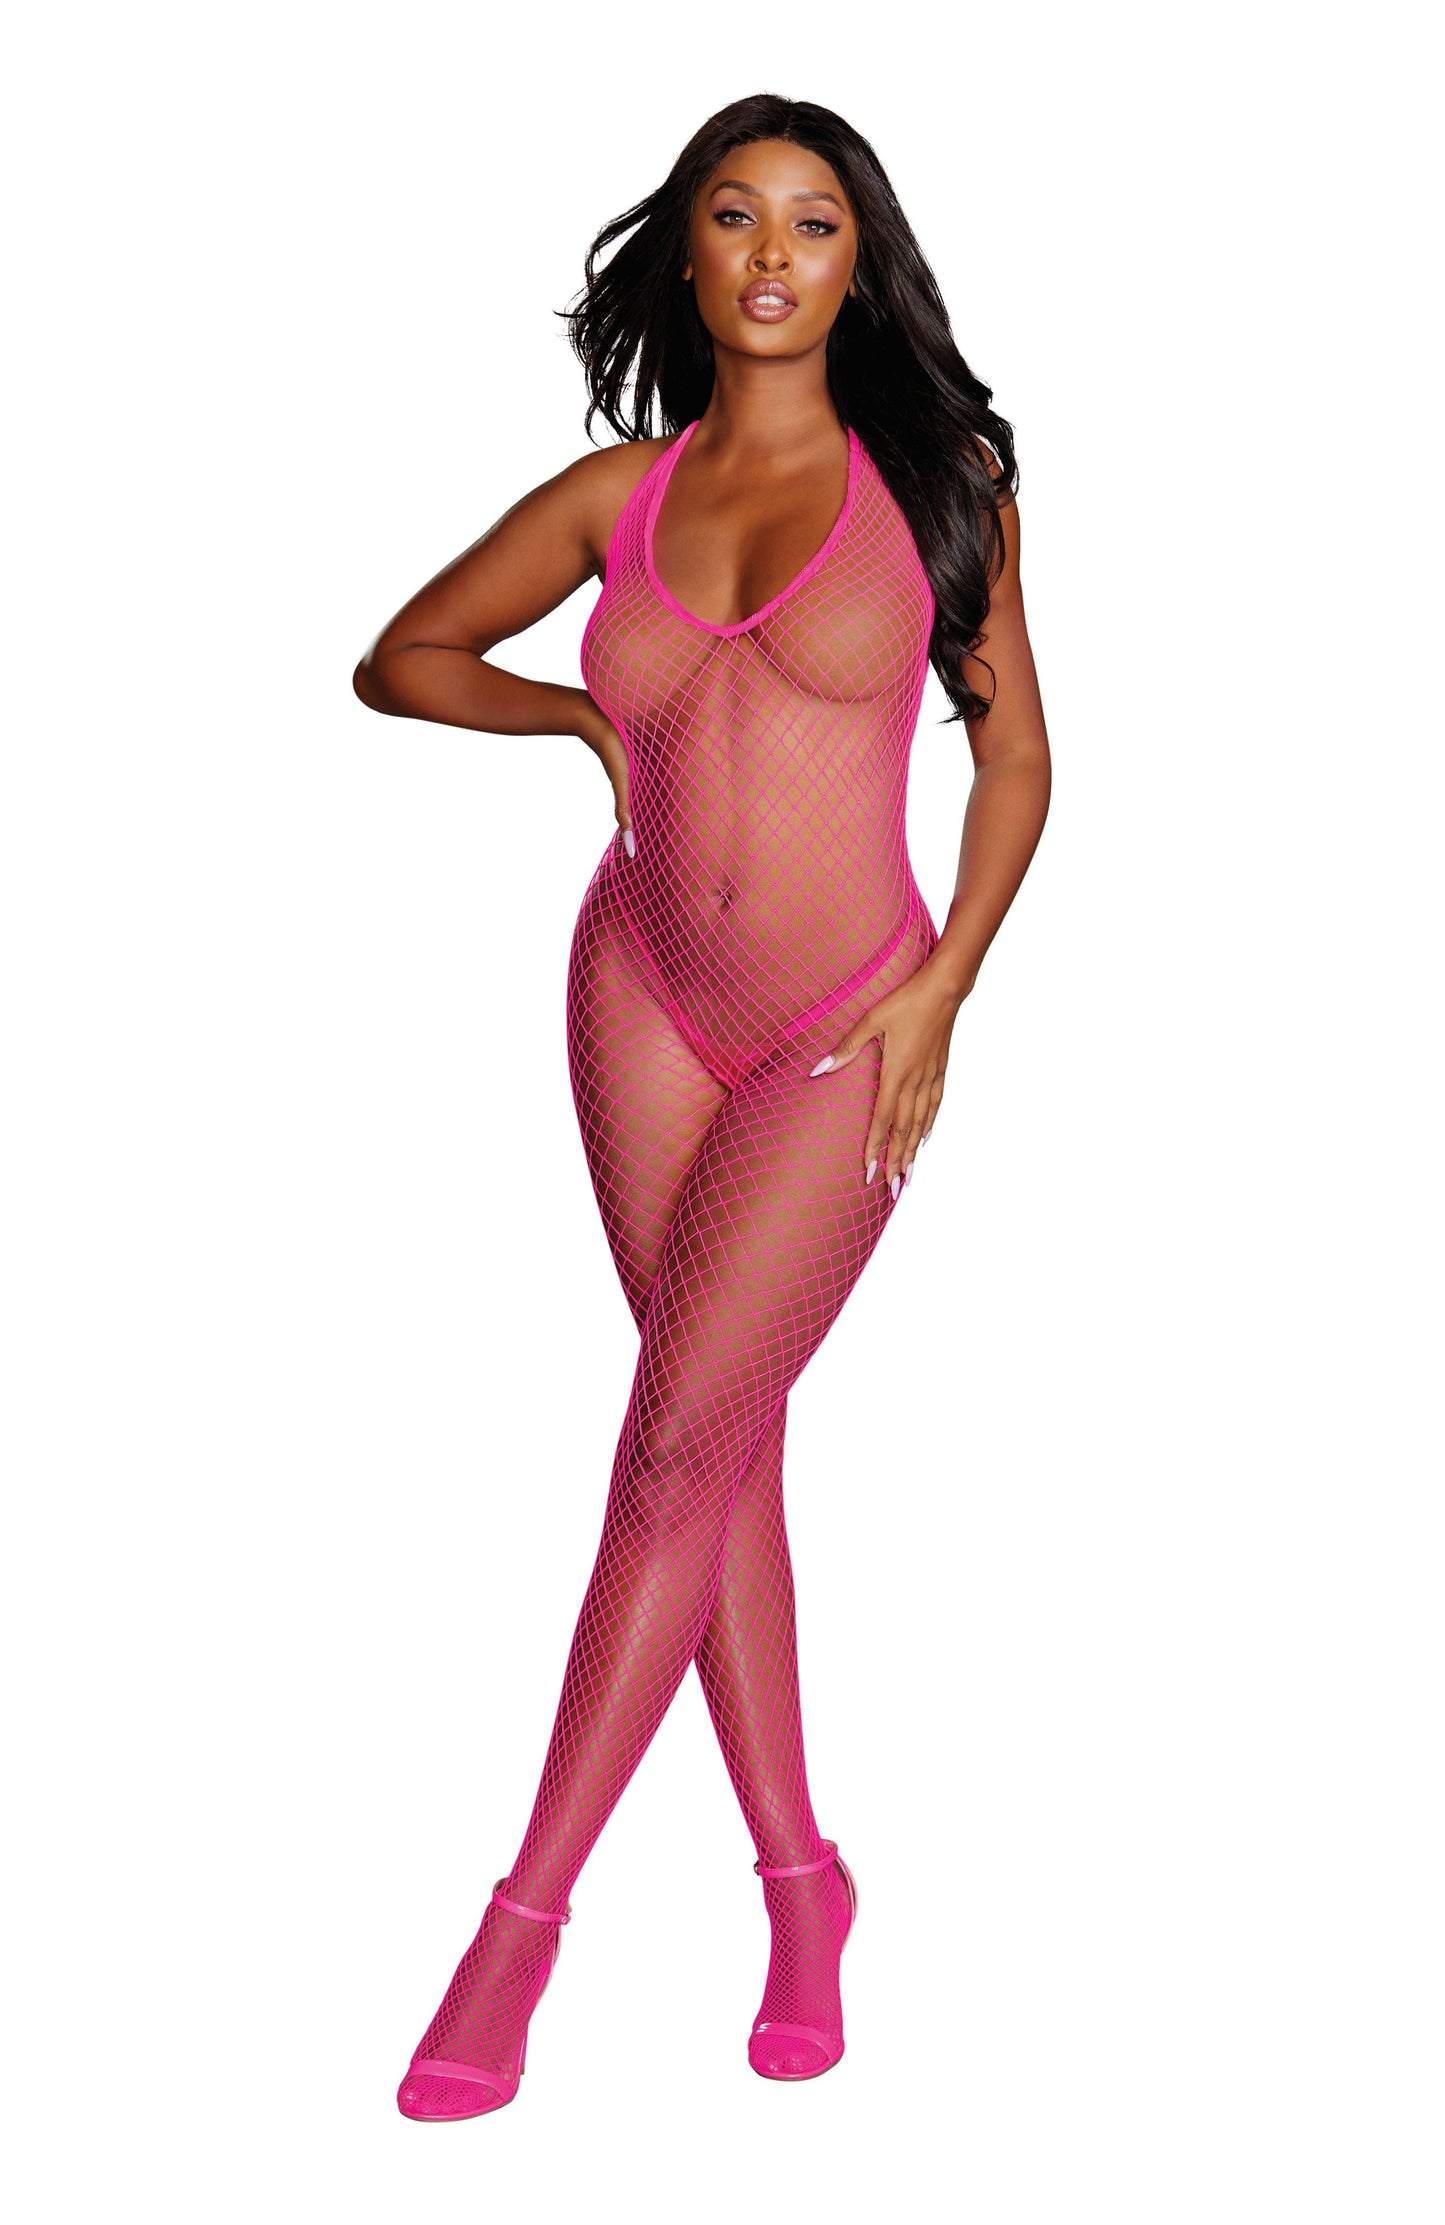 Diamond Net Bodystocking - One Size - Neon Pink - My Sex Toy Hub